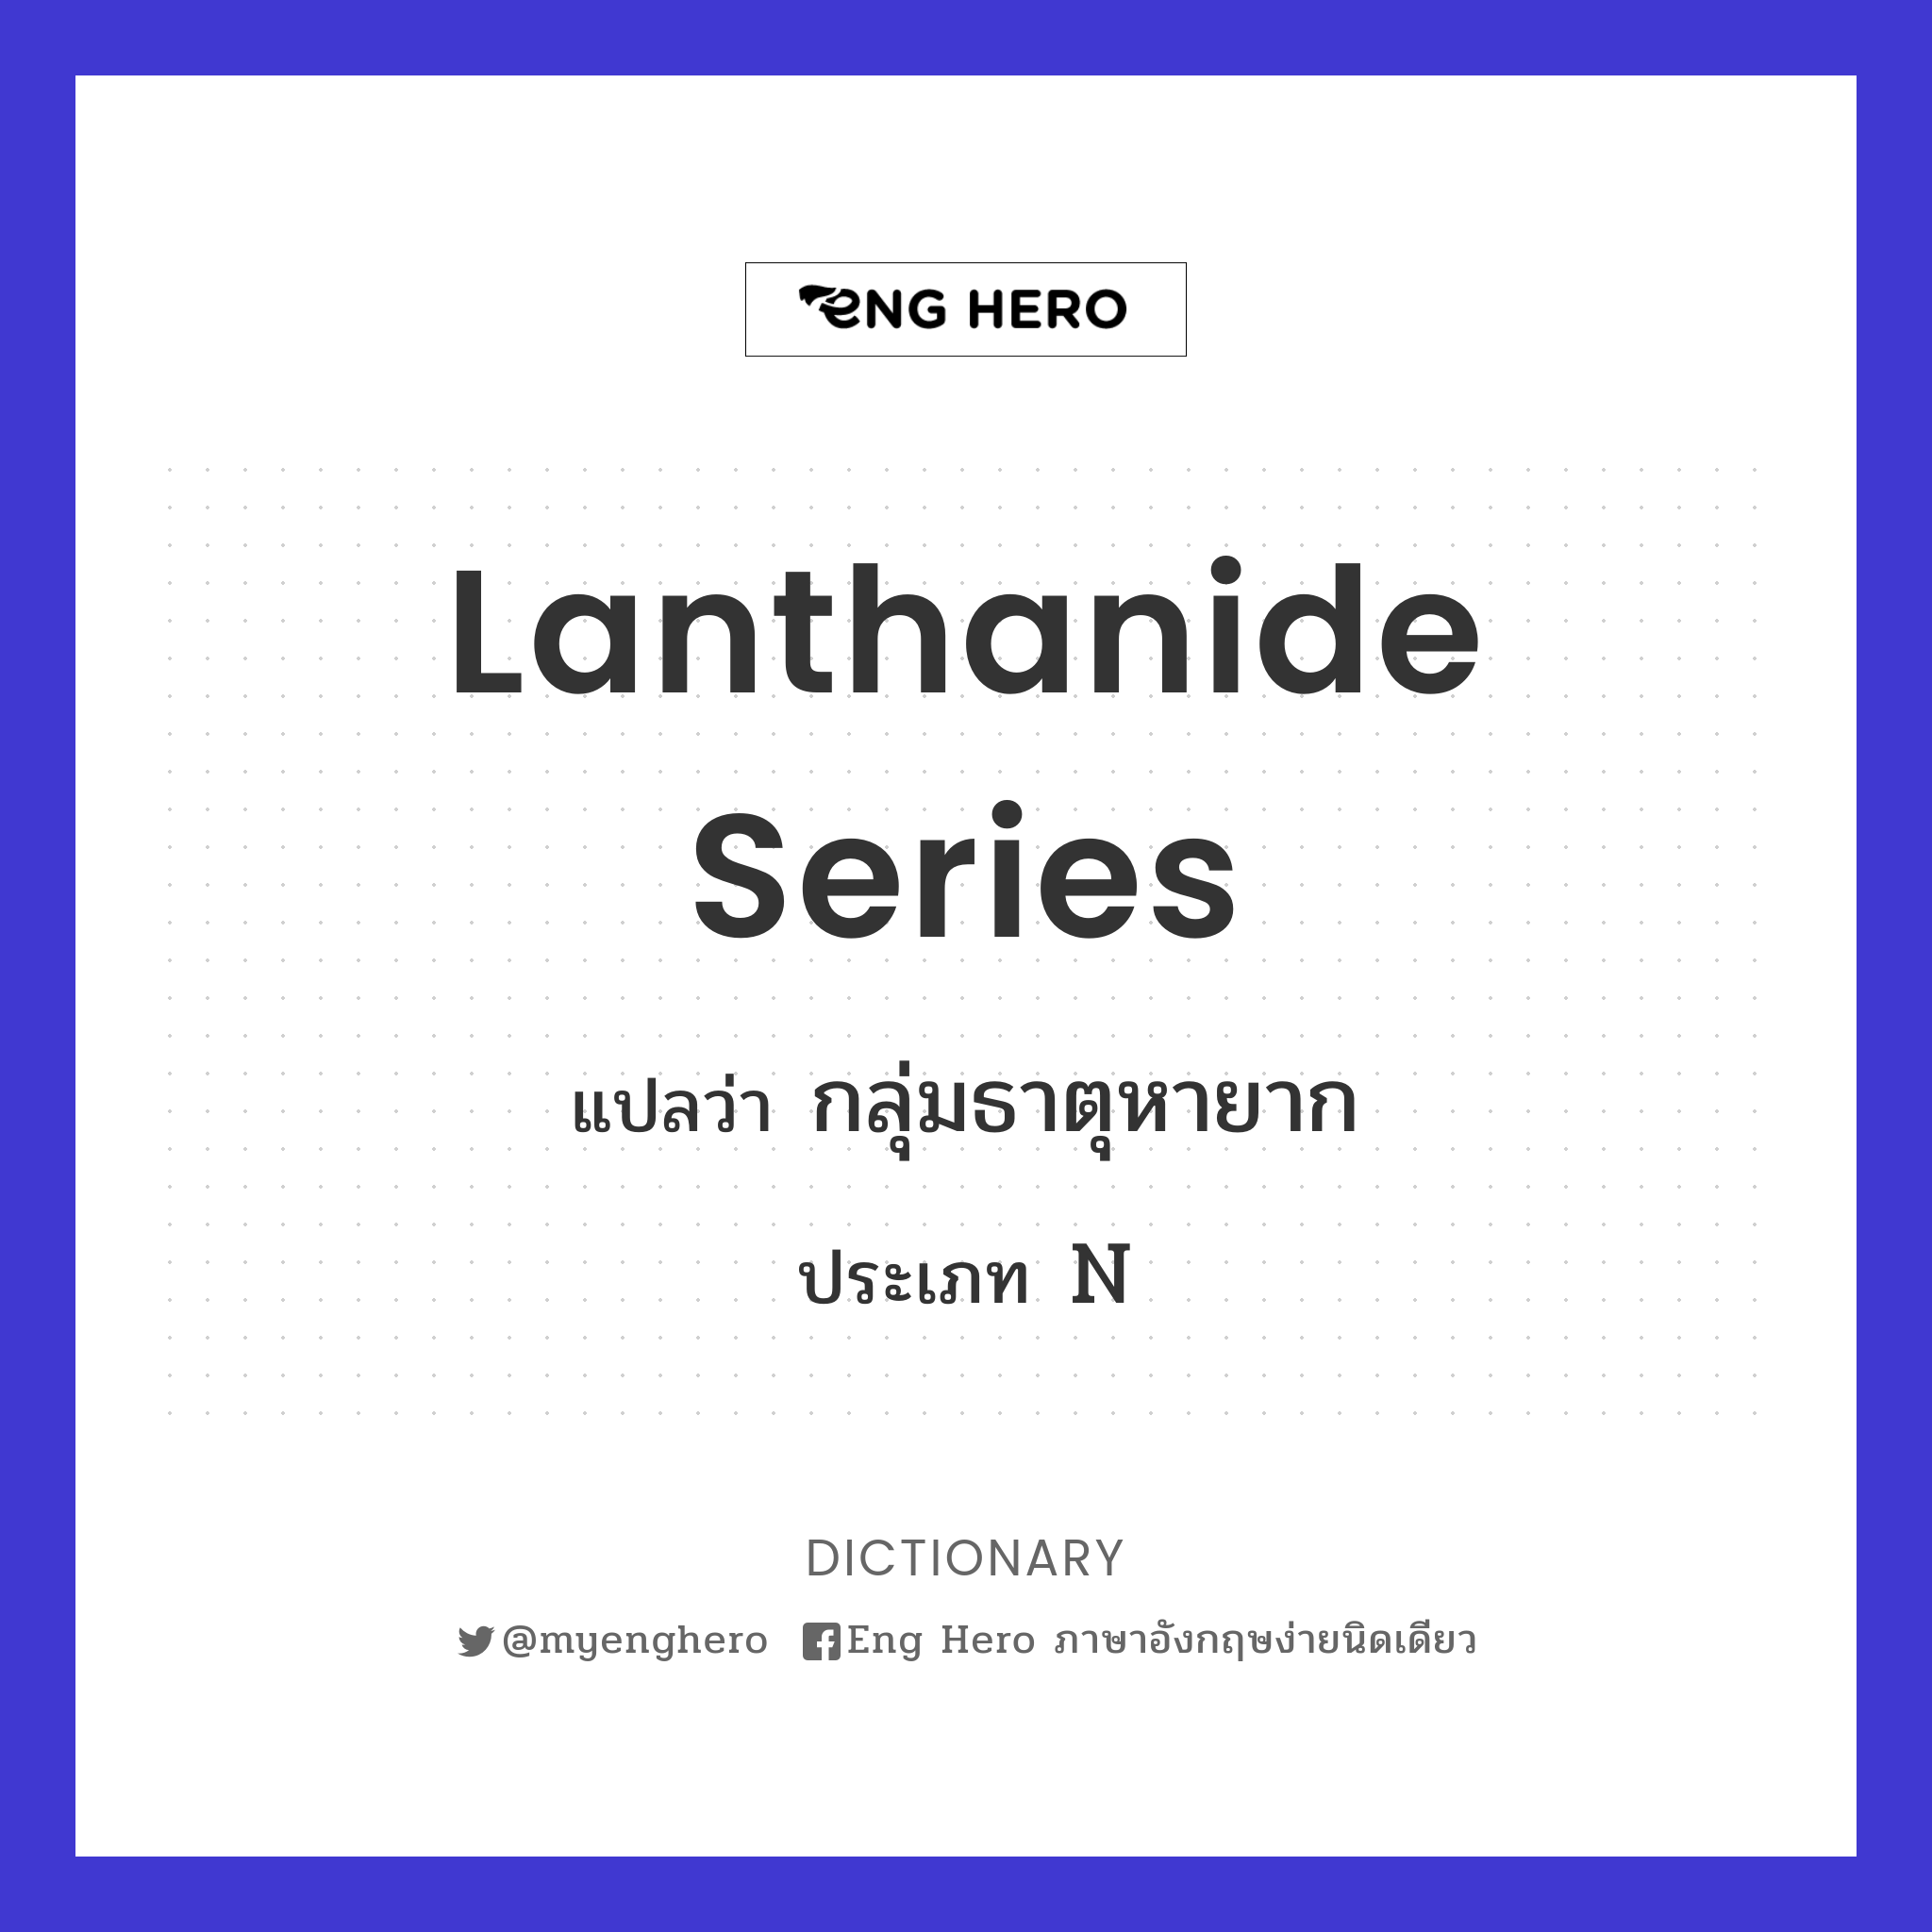 lanthanide series